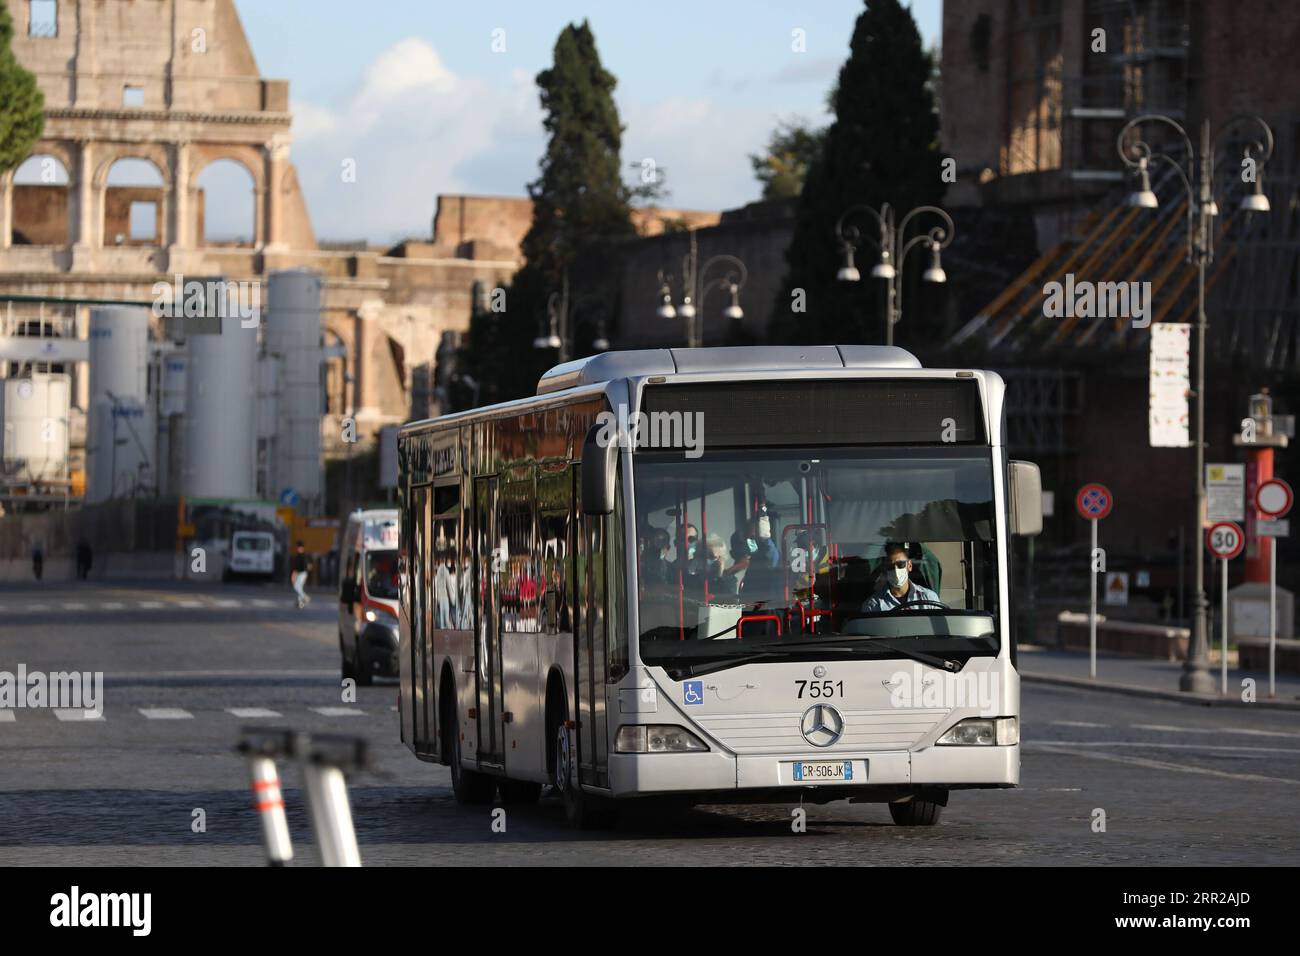 201007 -- ROM, 7. Oktober 2020 -- Ein Busfahrer, Der eine Gesichtsmaske trägt, arbeitet in Rom, Italien, 6. Oktober 2020. Fünf südliche Regionen Italiens haben obligatorische Maskengesetze eingeführt, auch für Menschen in Freiräumen. Und die Regierung hat angekündigt, dass der nationale Ausnahmezustand, der erstmals am 31. Januar in Kraft gesetzt wurde, zumindest bis zu seinem einjährigen Jahrestag verlängert wird. ITALIEN-ROM-NATIONALER STAAT DER NOTVERLÄNGERUNG CHENGXTINGTING PUBLICATIONXNOTXINXCHN Stockfoto